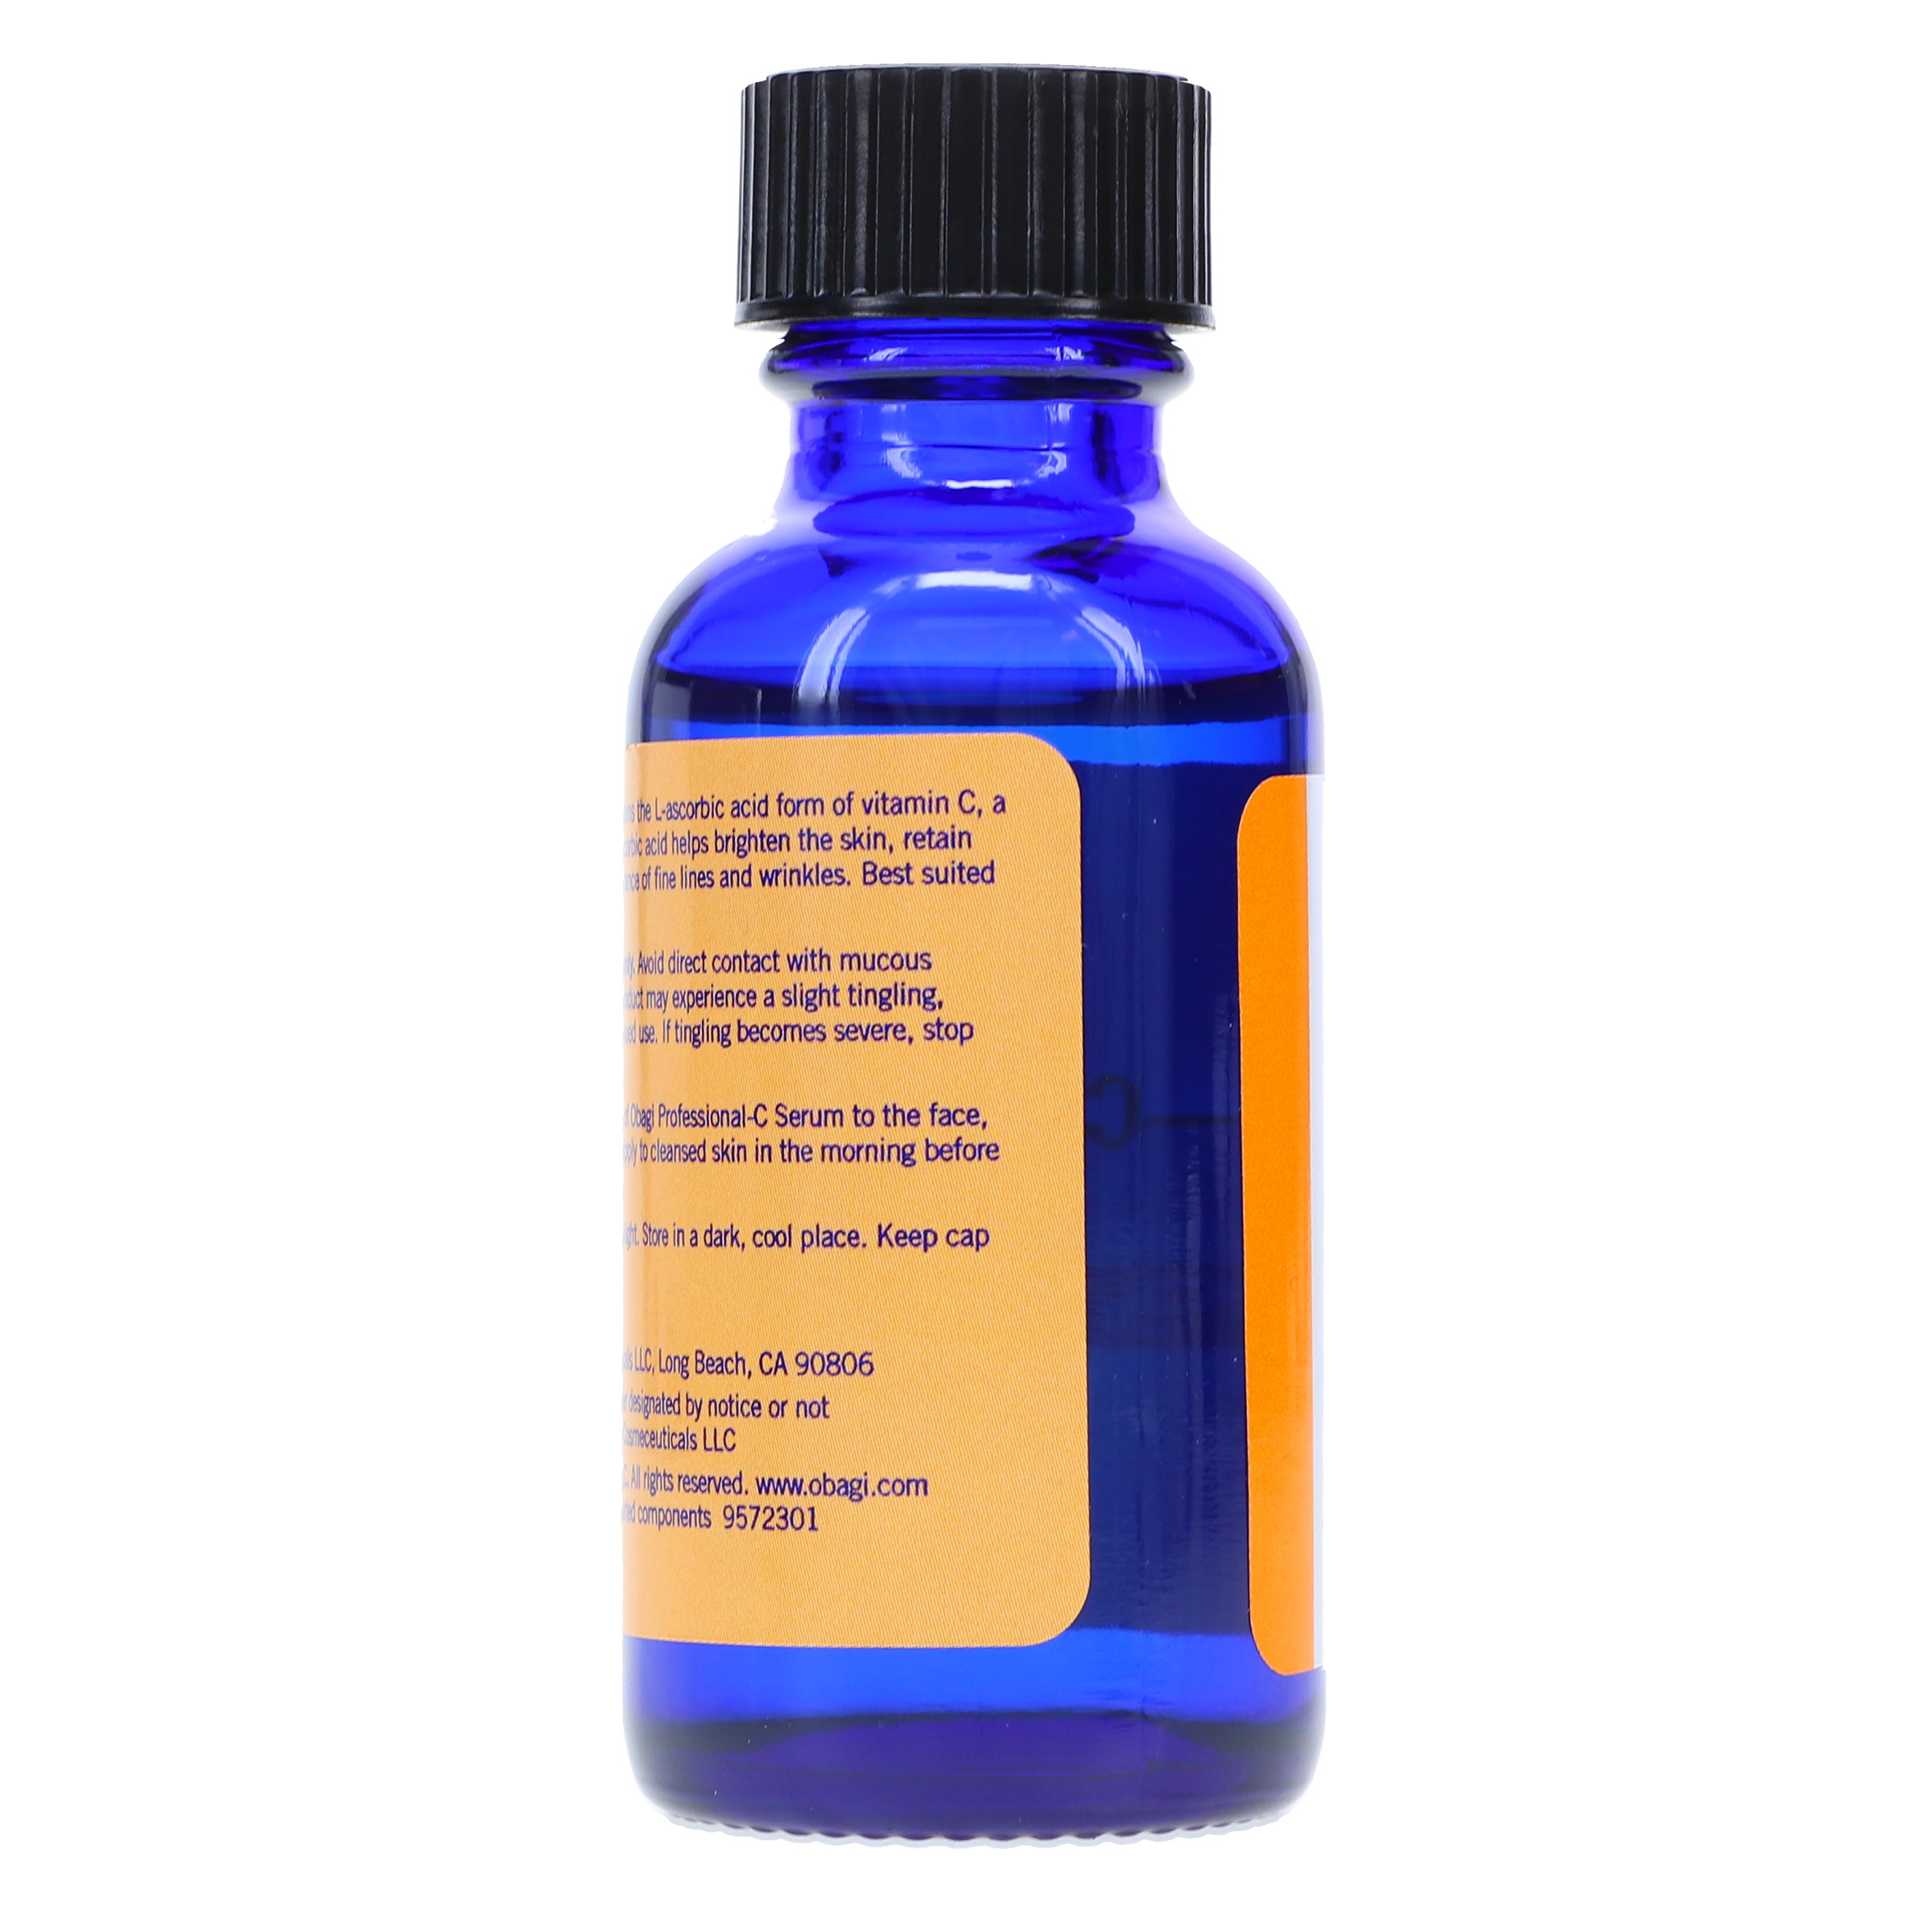 Obagi System Professional-C Vitamin C Serum 20% 1 oz - image 5 of 8